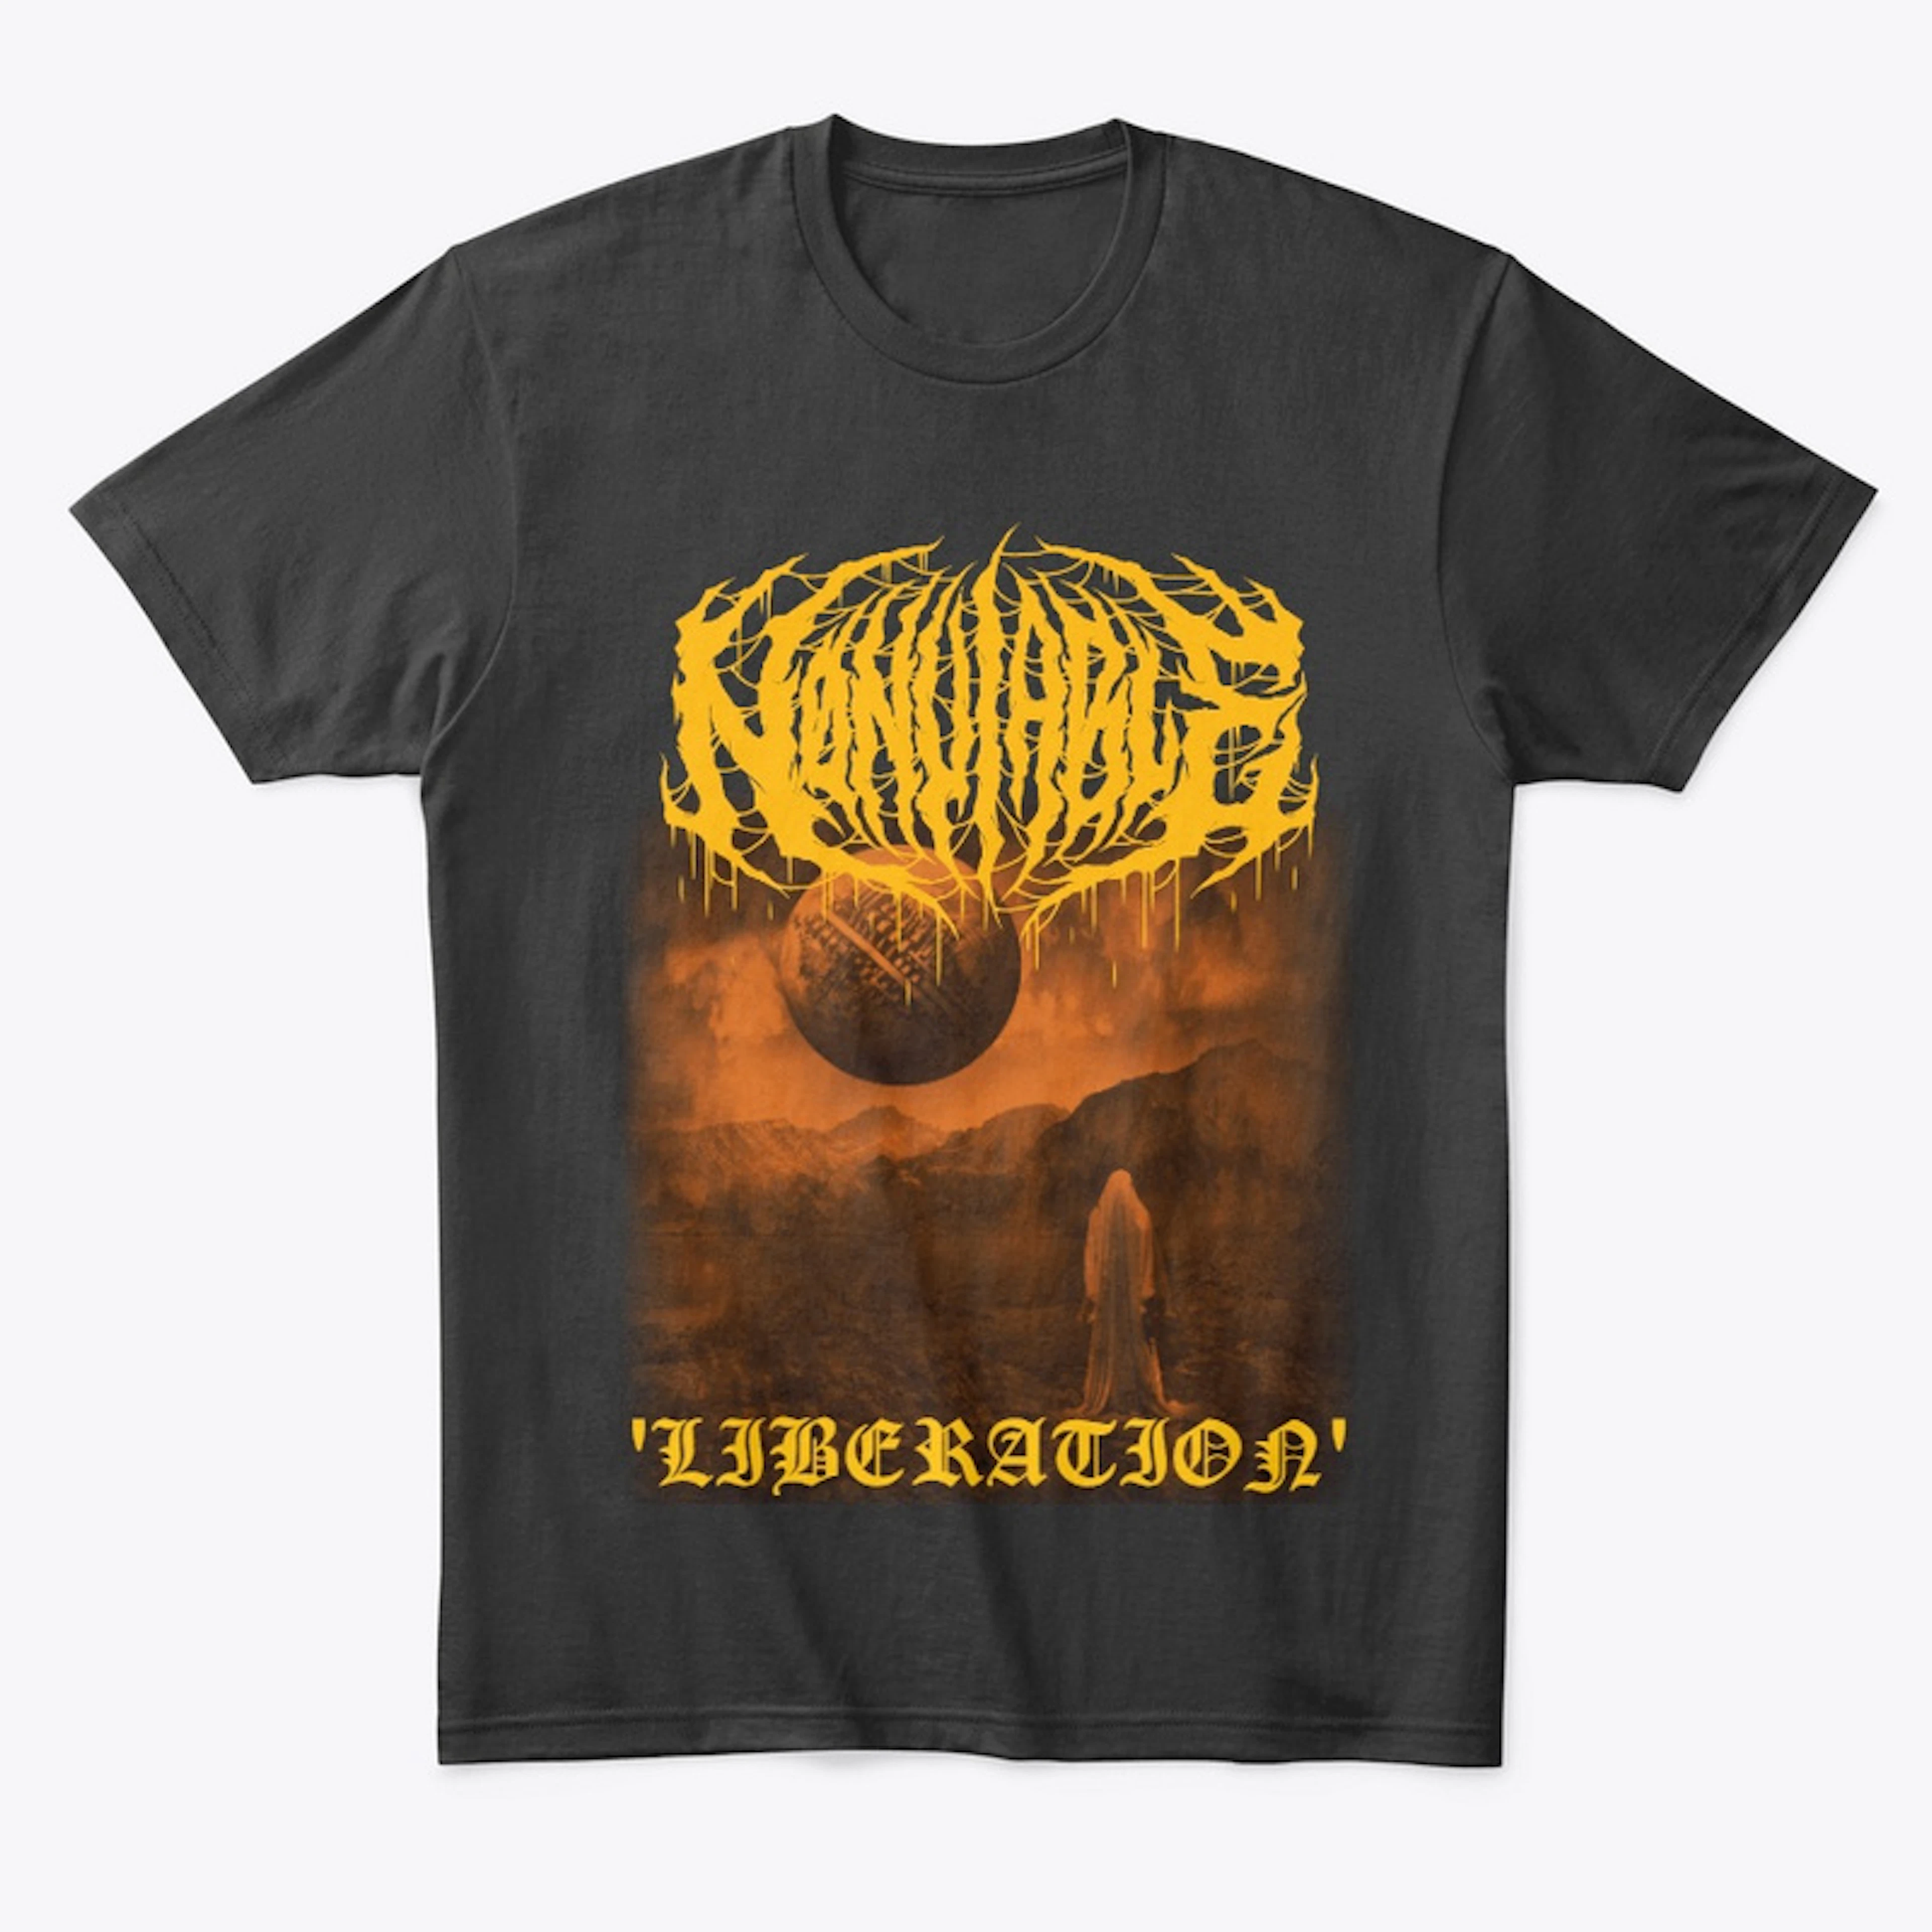 'Liberation' Shirt